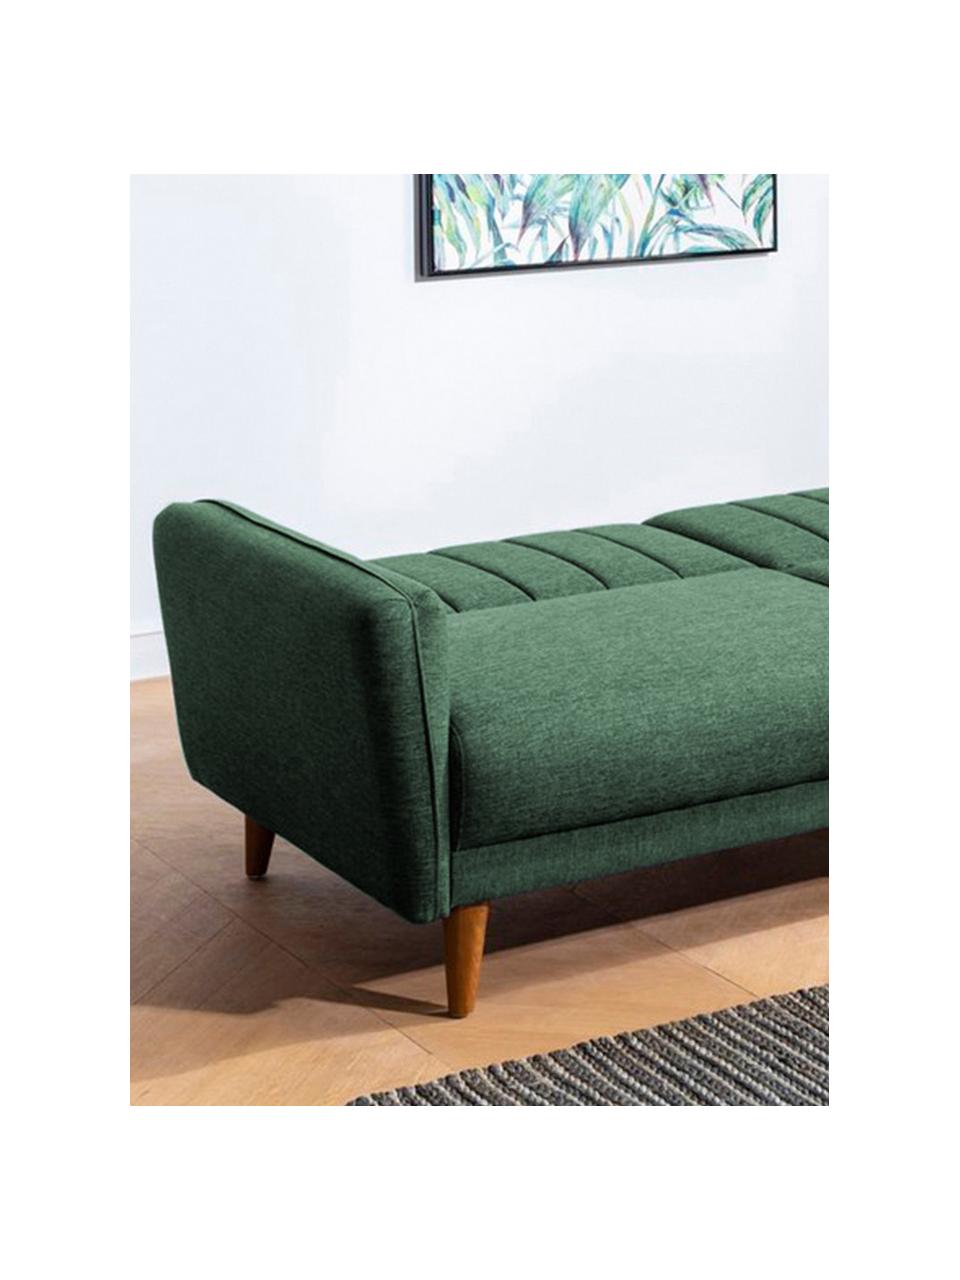 Sofa rozkładana Aqua (3-osobowa), Tapicerka: len, Stelaż: drewno rogowe, metal, Nogi: drewno naturalne, Zielony, S 202 x G 85 cm